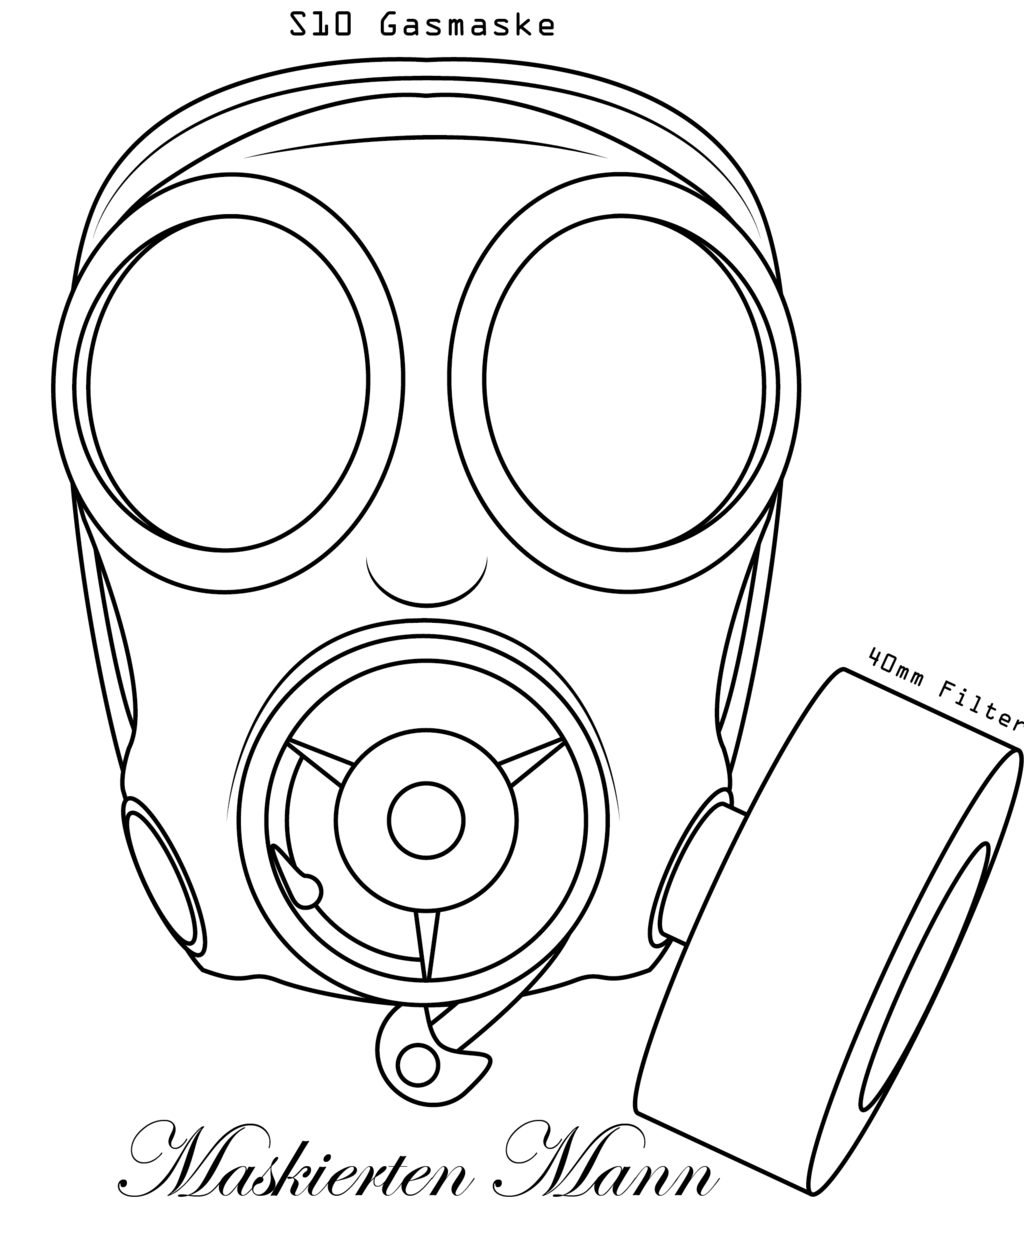 smoke gas mask drawing